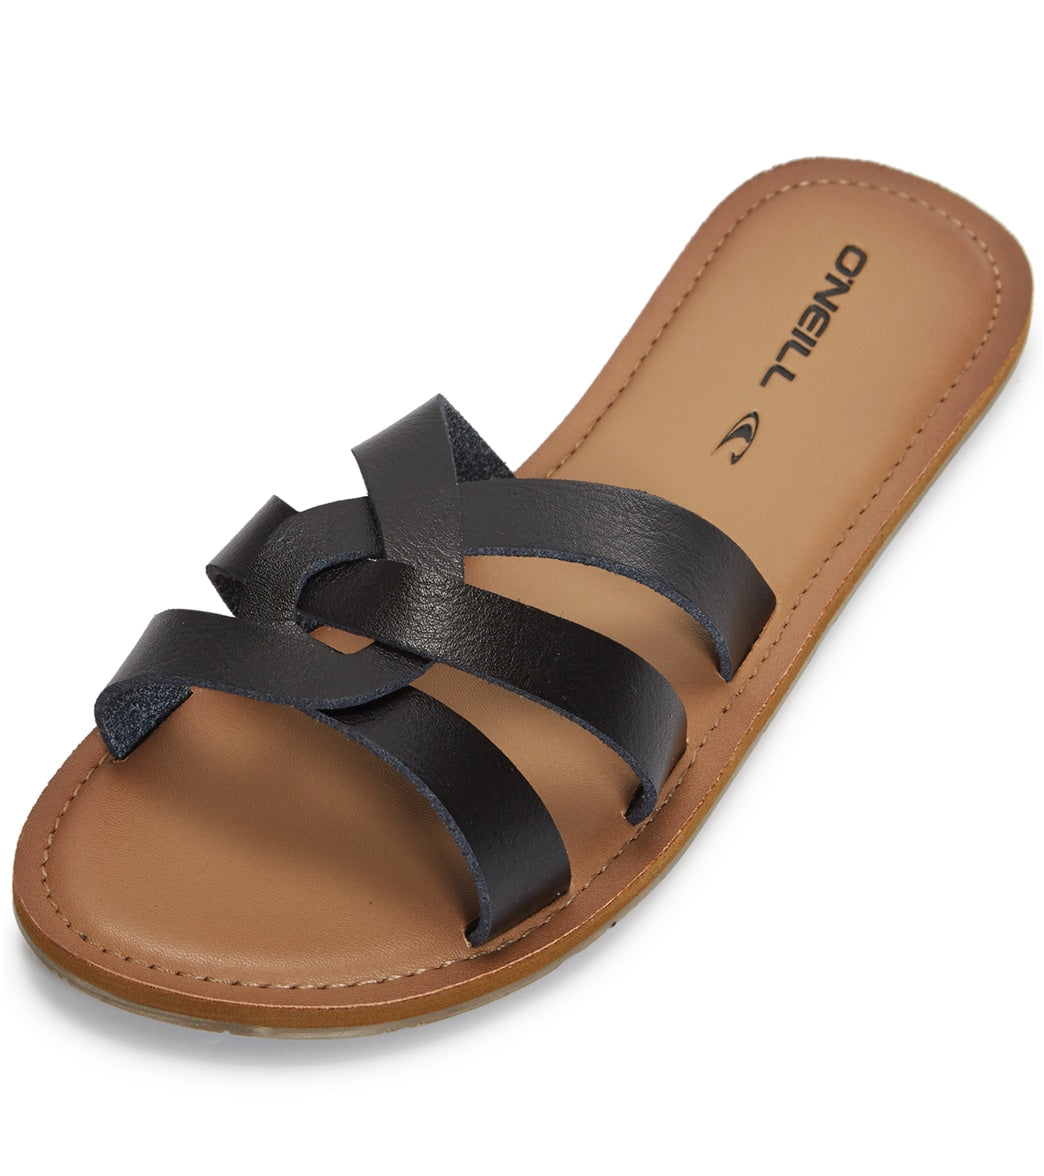 O'neill Dawson Slides Sandals - Black 6 - Swimoutlet.com